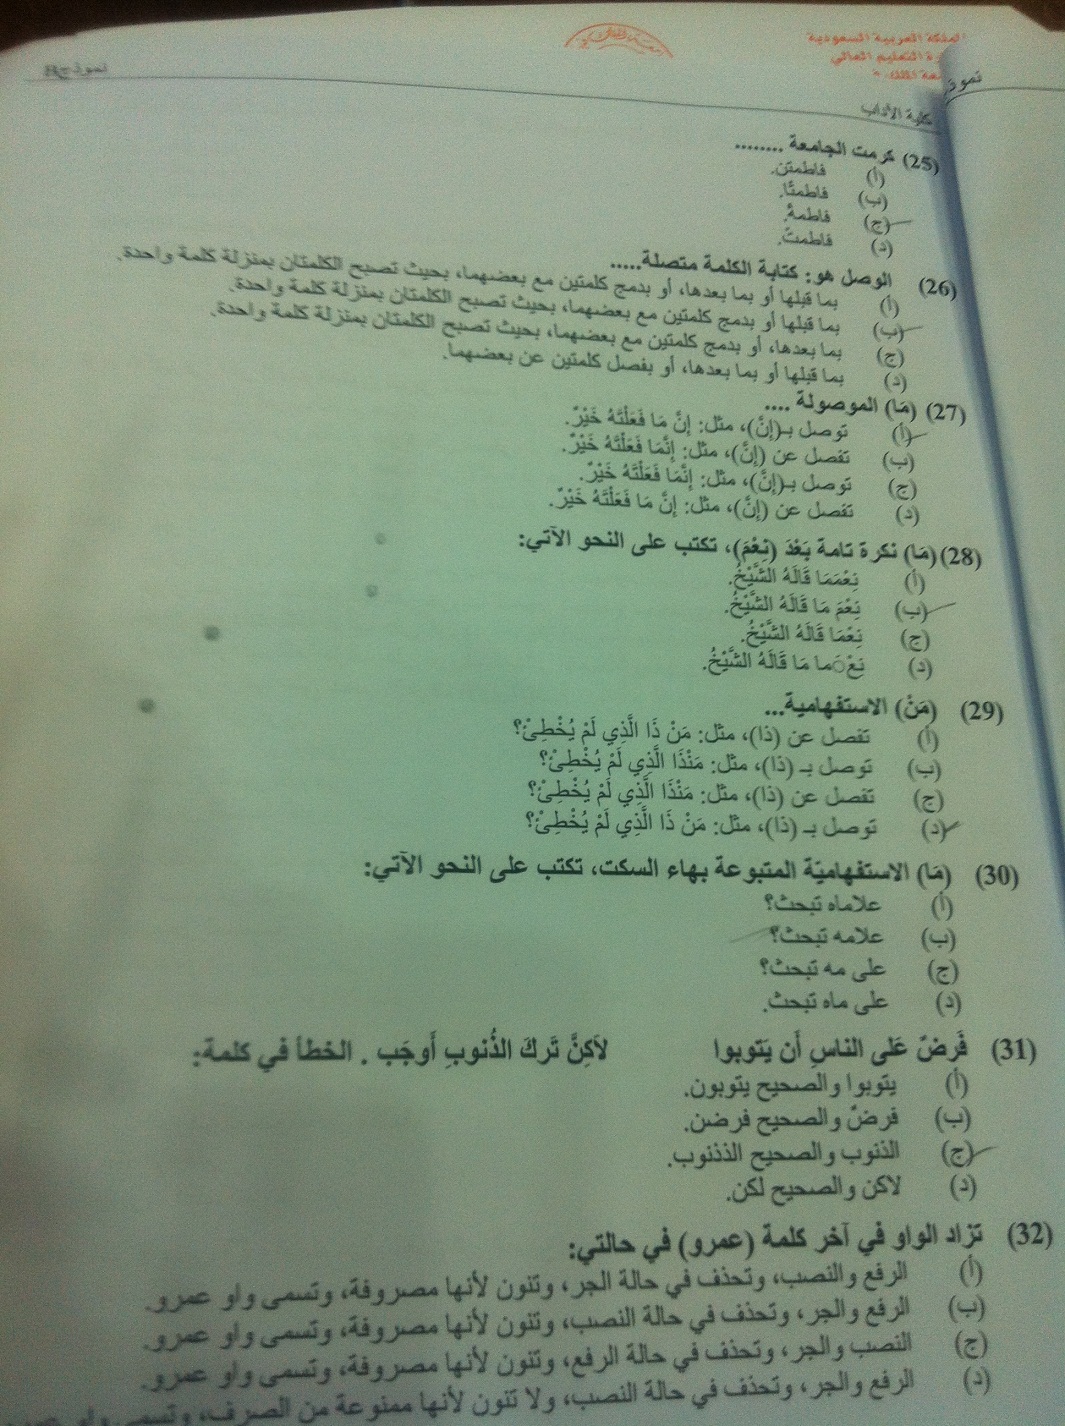 اسئلة مادة التحرير العربي الفصل الدراسي الثاني 1433هـ نموذج (b)